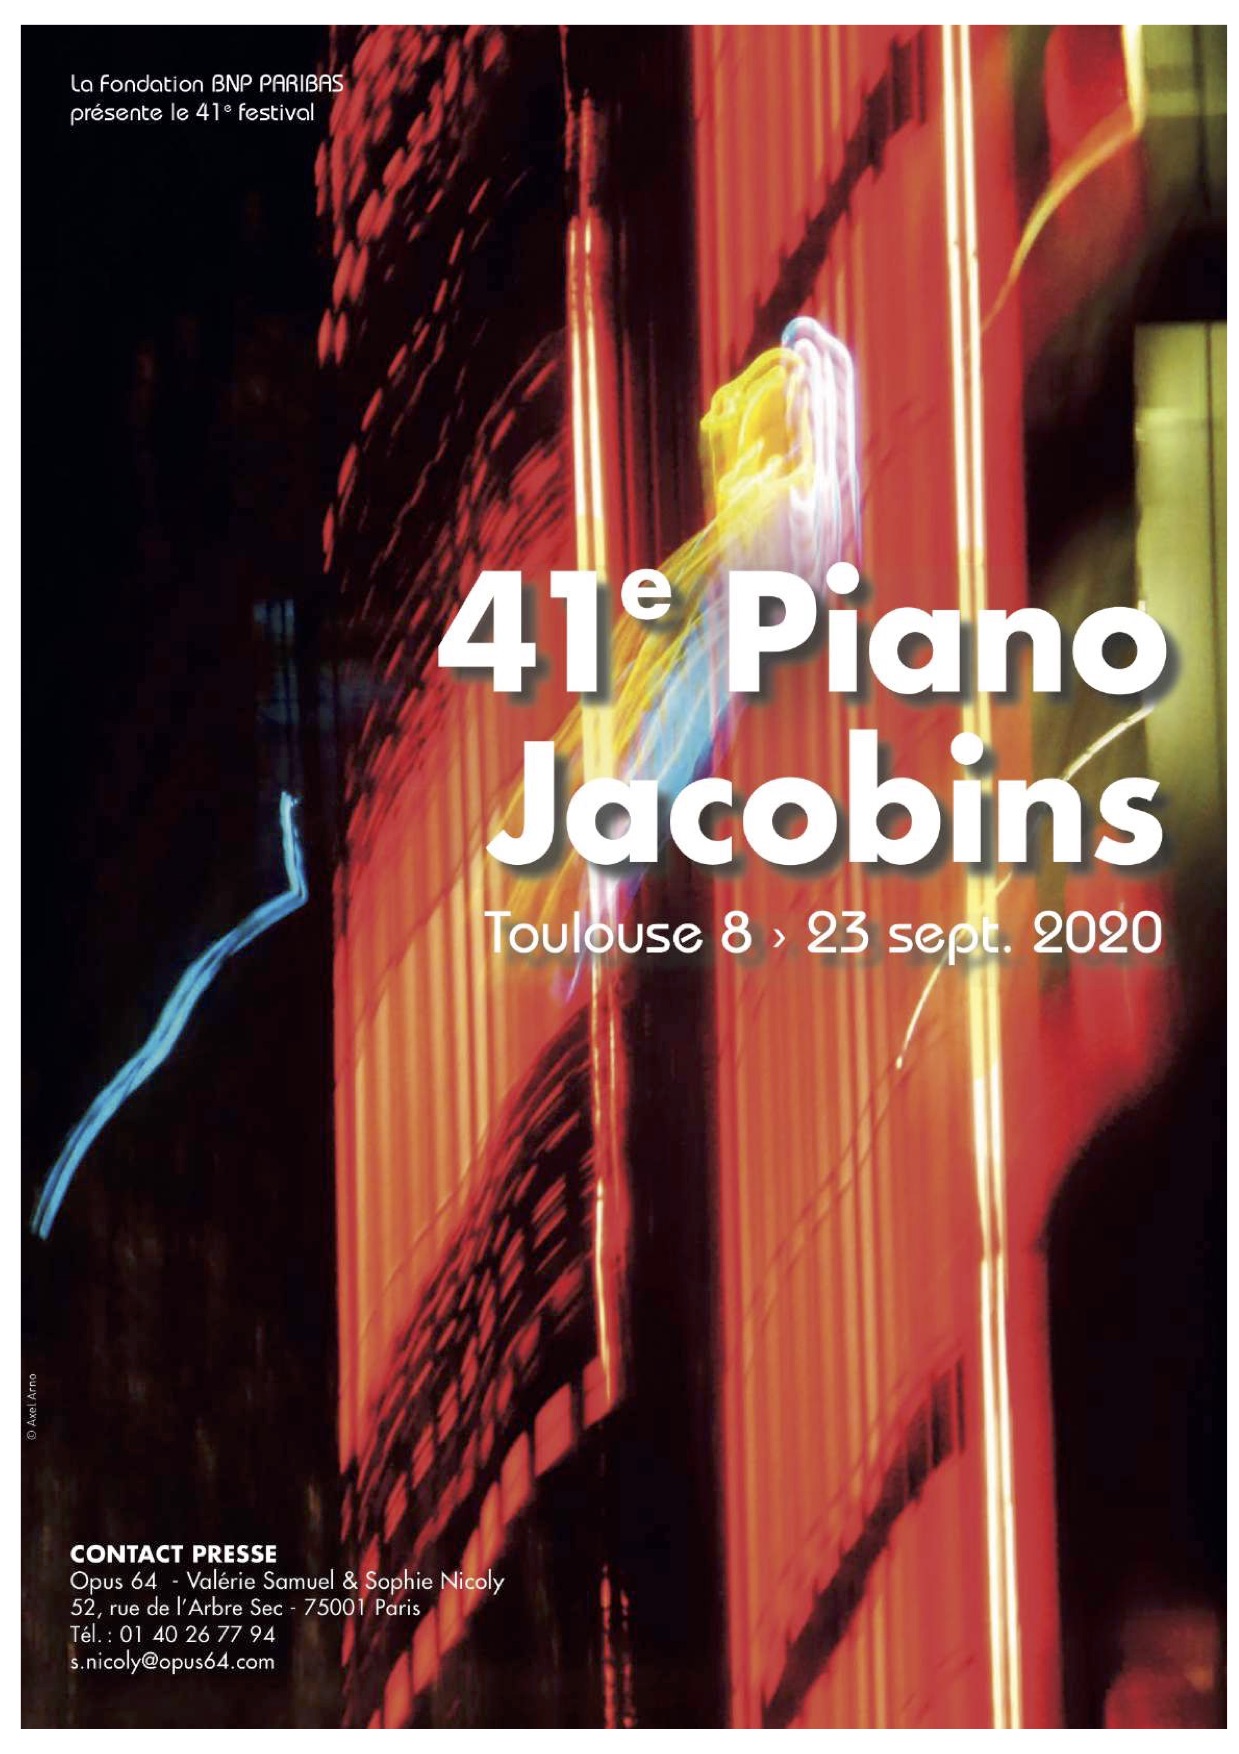 Archivé: FESTIVAL PIANO AUX JACOBINS